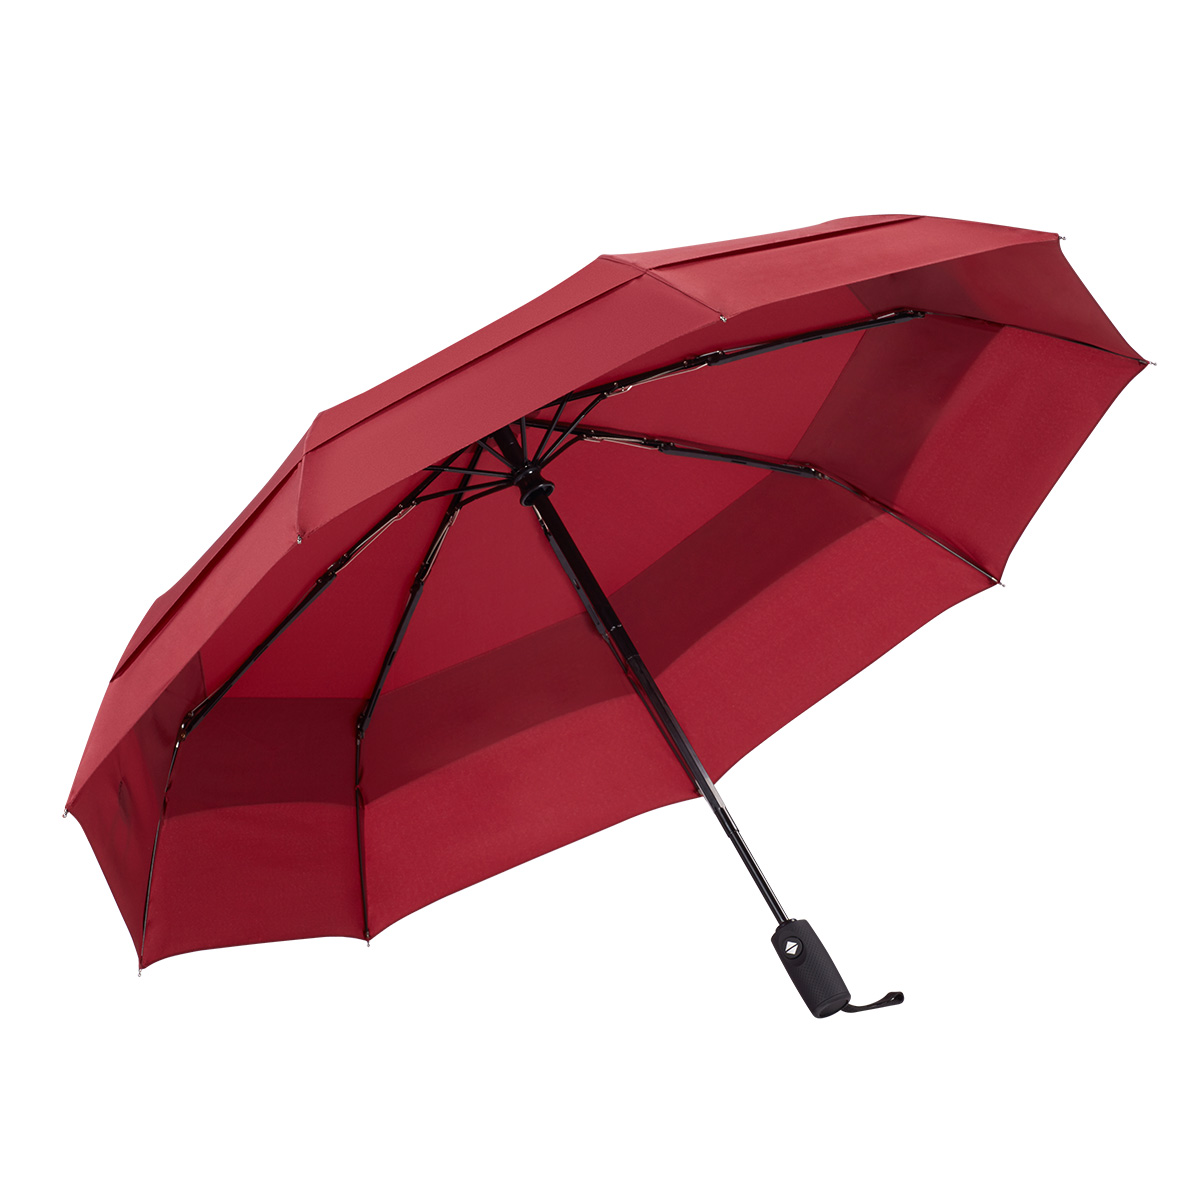 Ovida သုံးခေါက် အော်တိုဖွင့် အော်တိုပိတ် Windproof Double Canopy Wine Red Business Umbrella